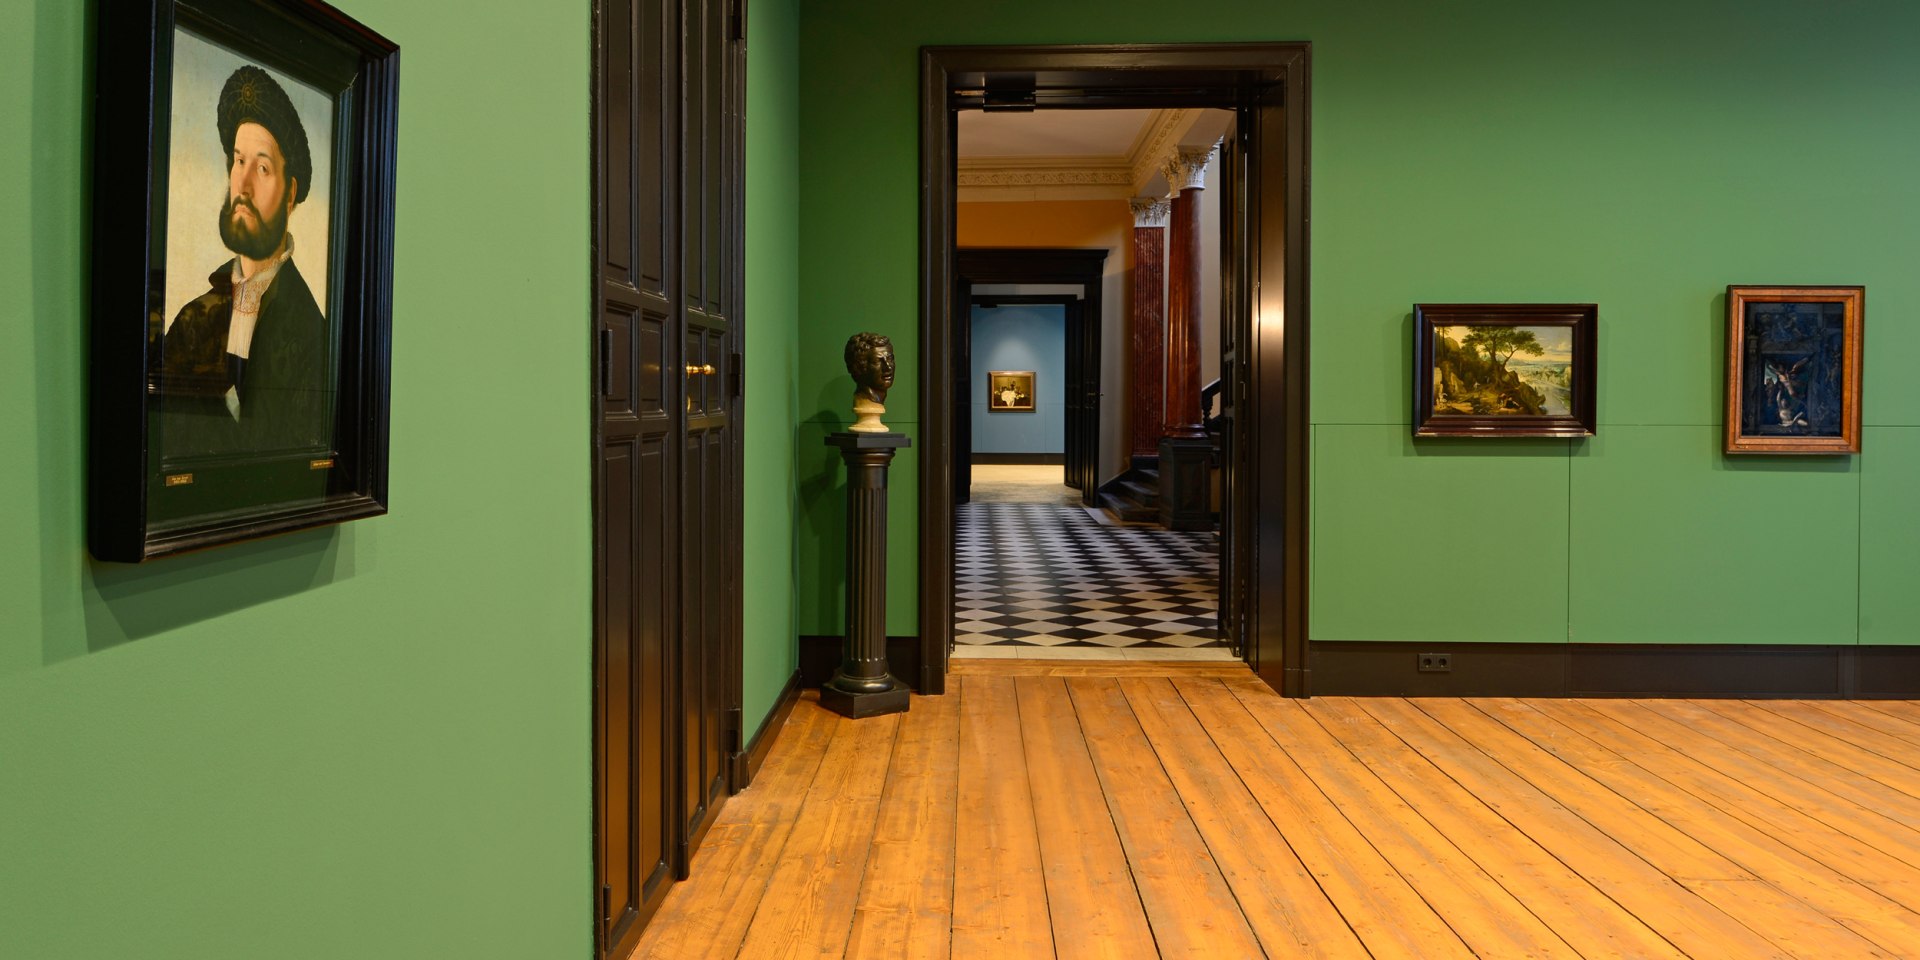 Blick in einen Raum des Museums, © Landesmuseum für Kunst und Kulturgeschichte Oldenburg / S. Adelaide